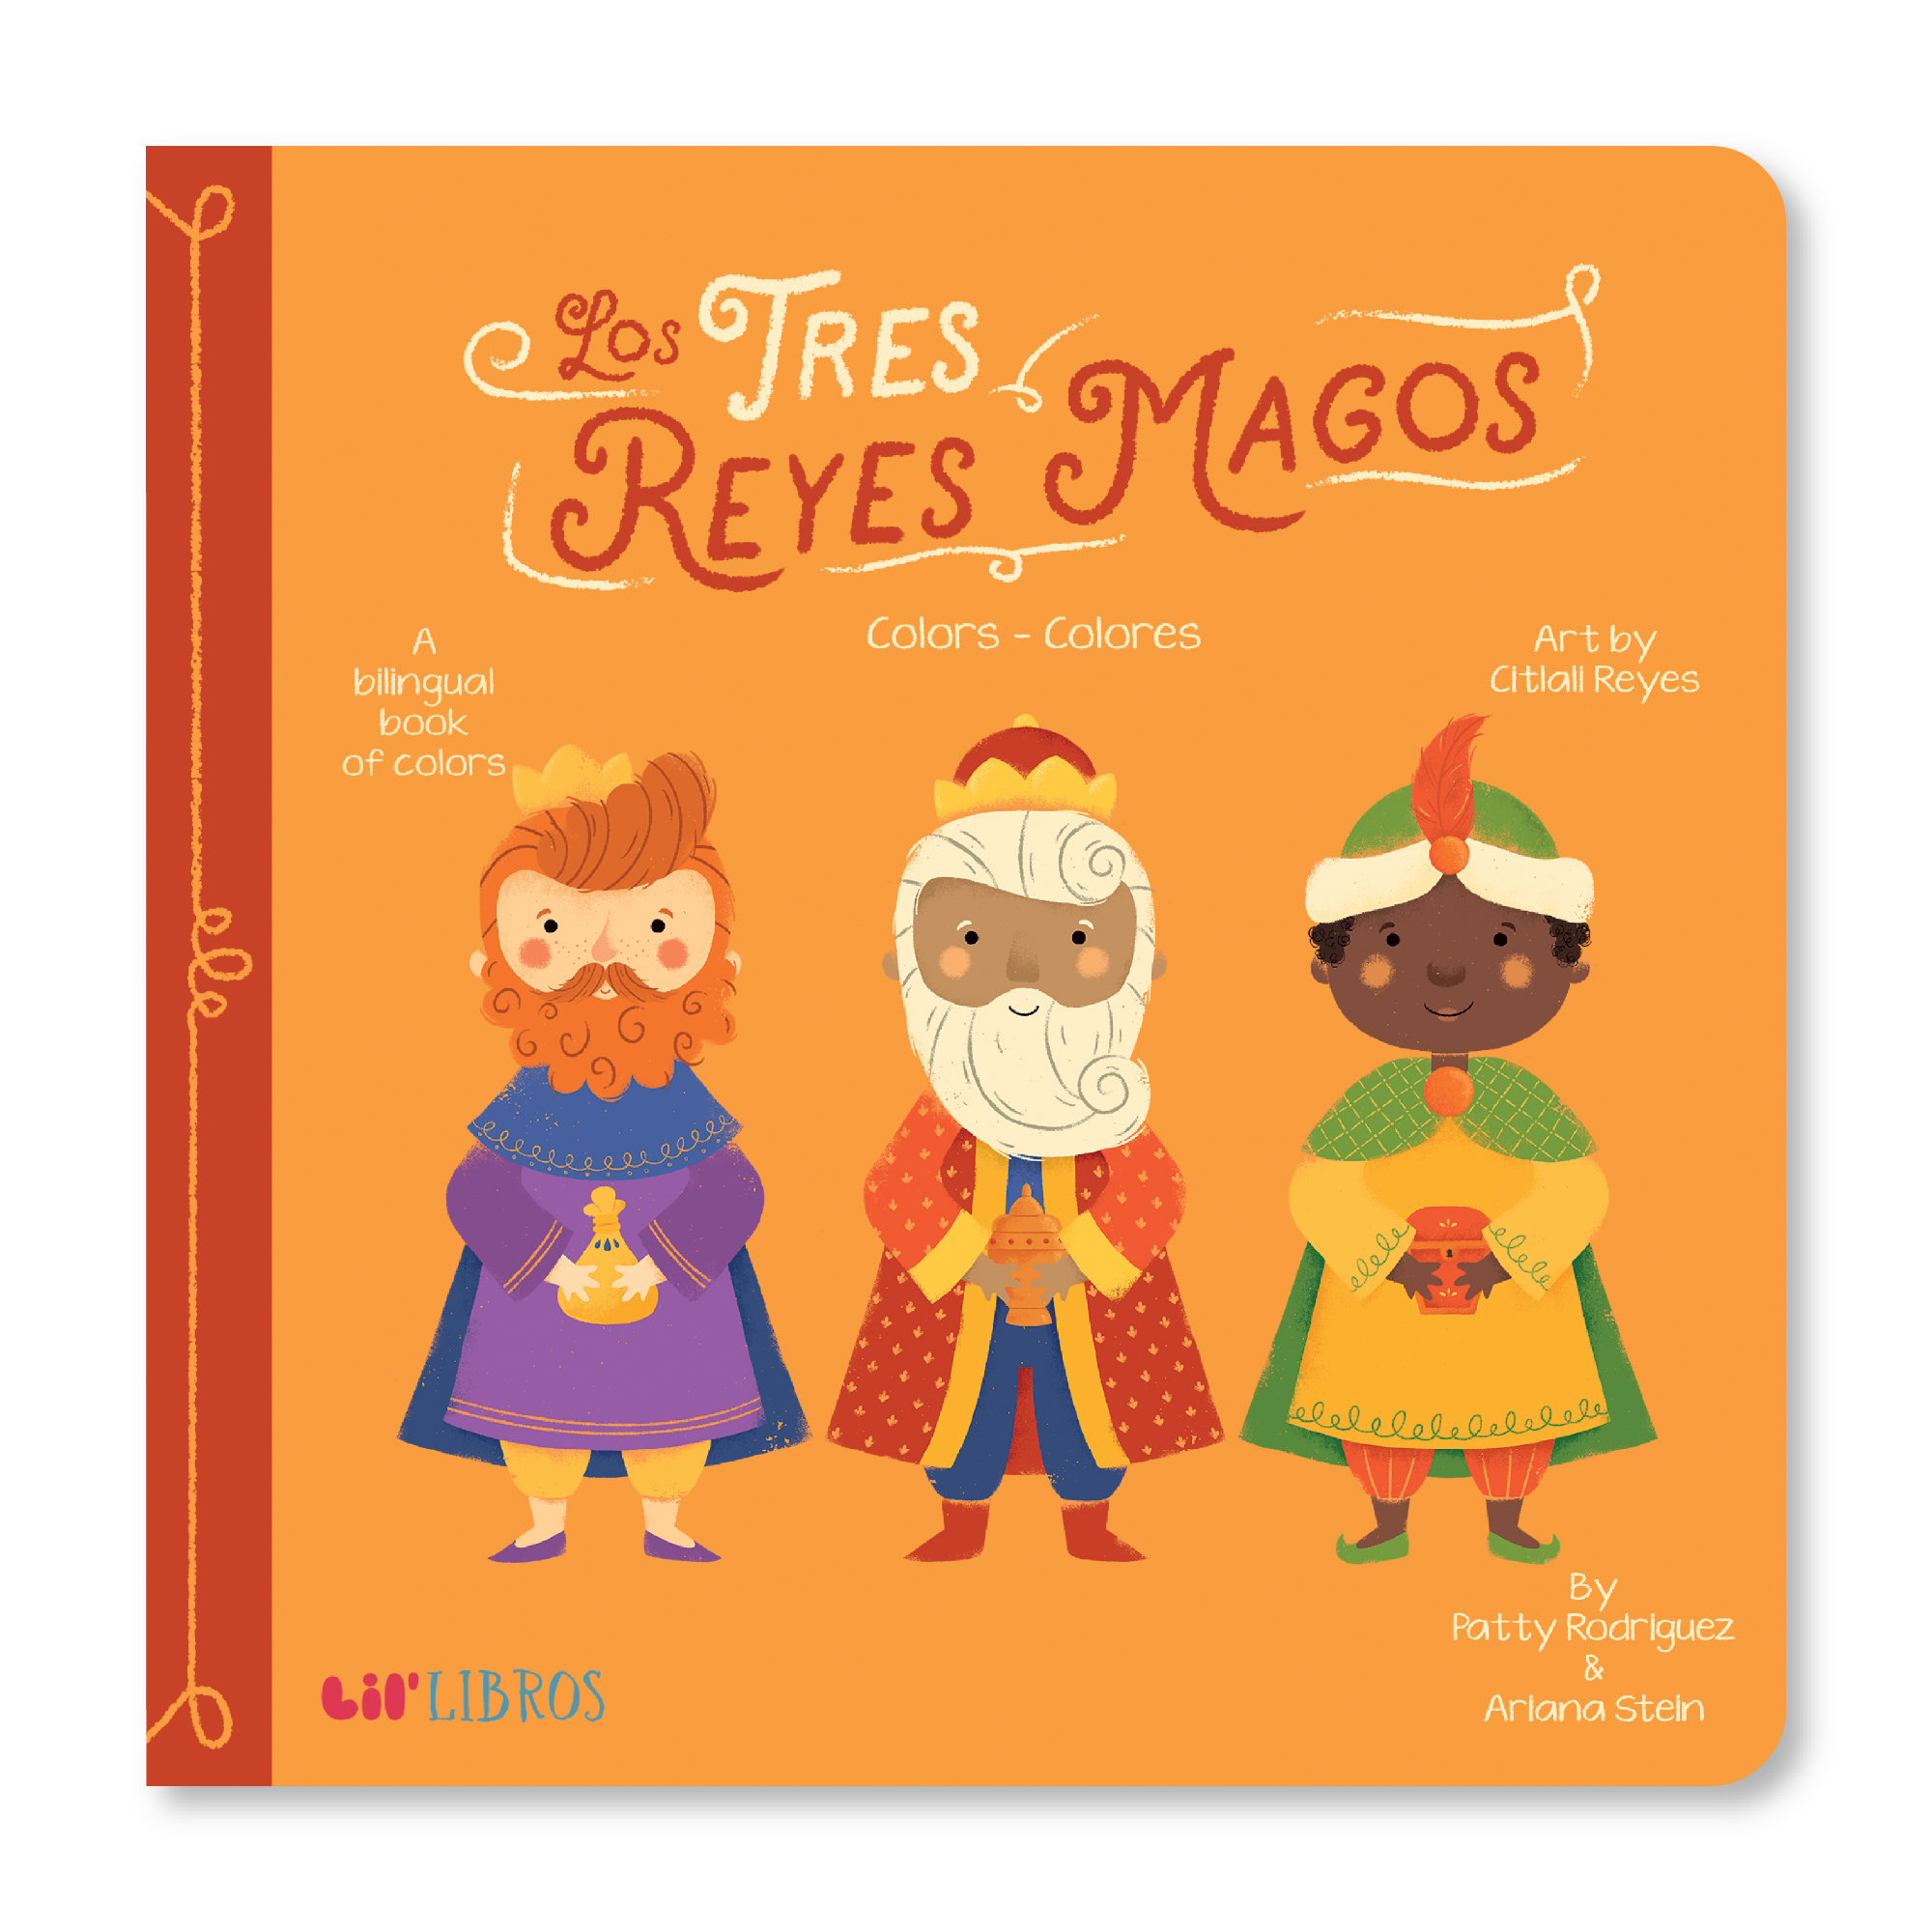 Los Tres Reyes Magos: Colors / Colores